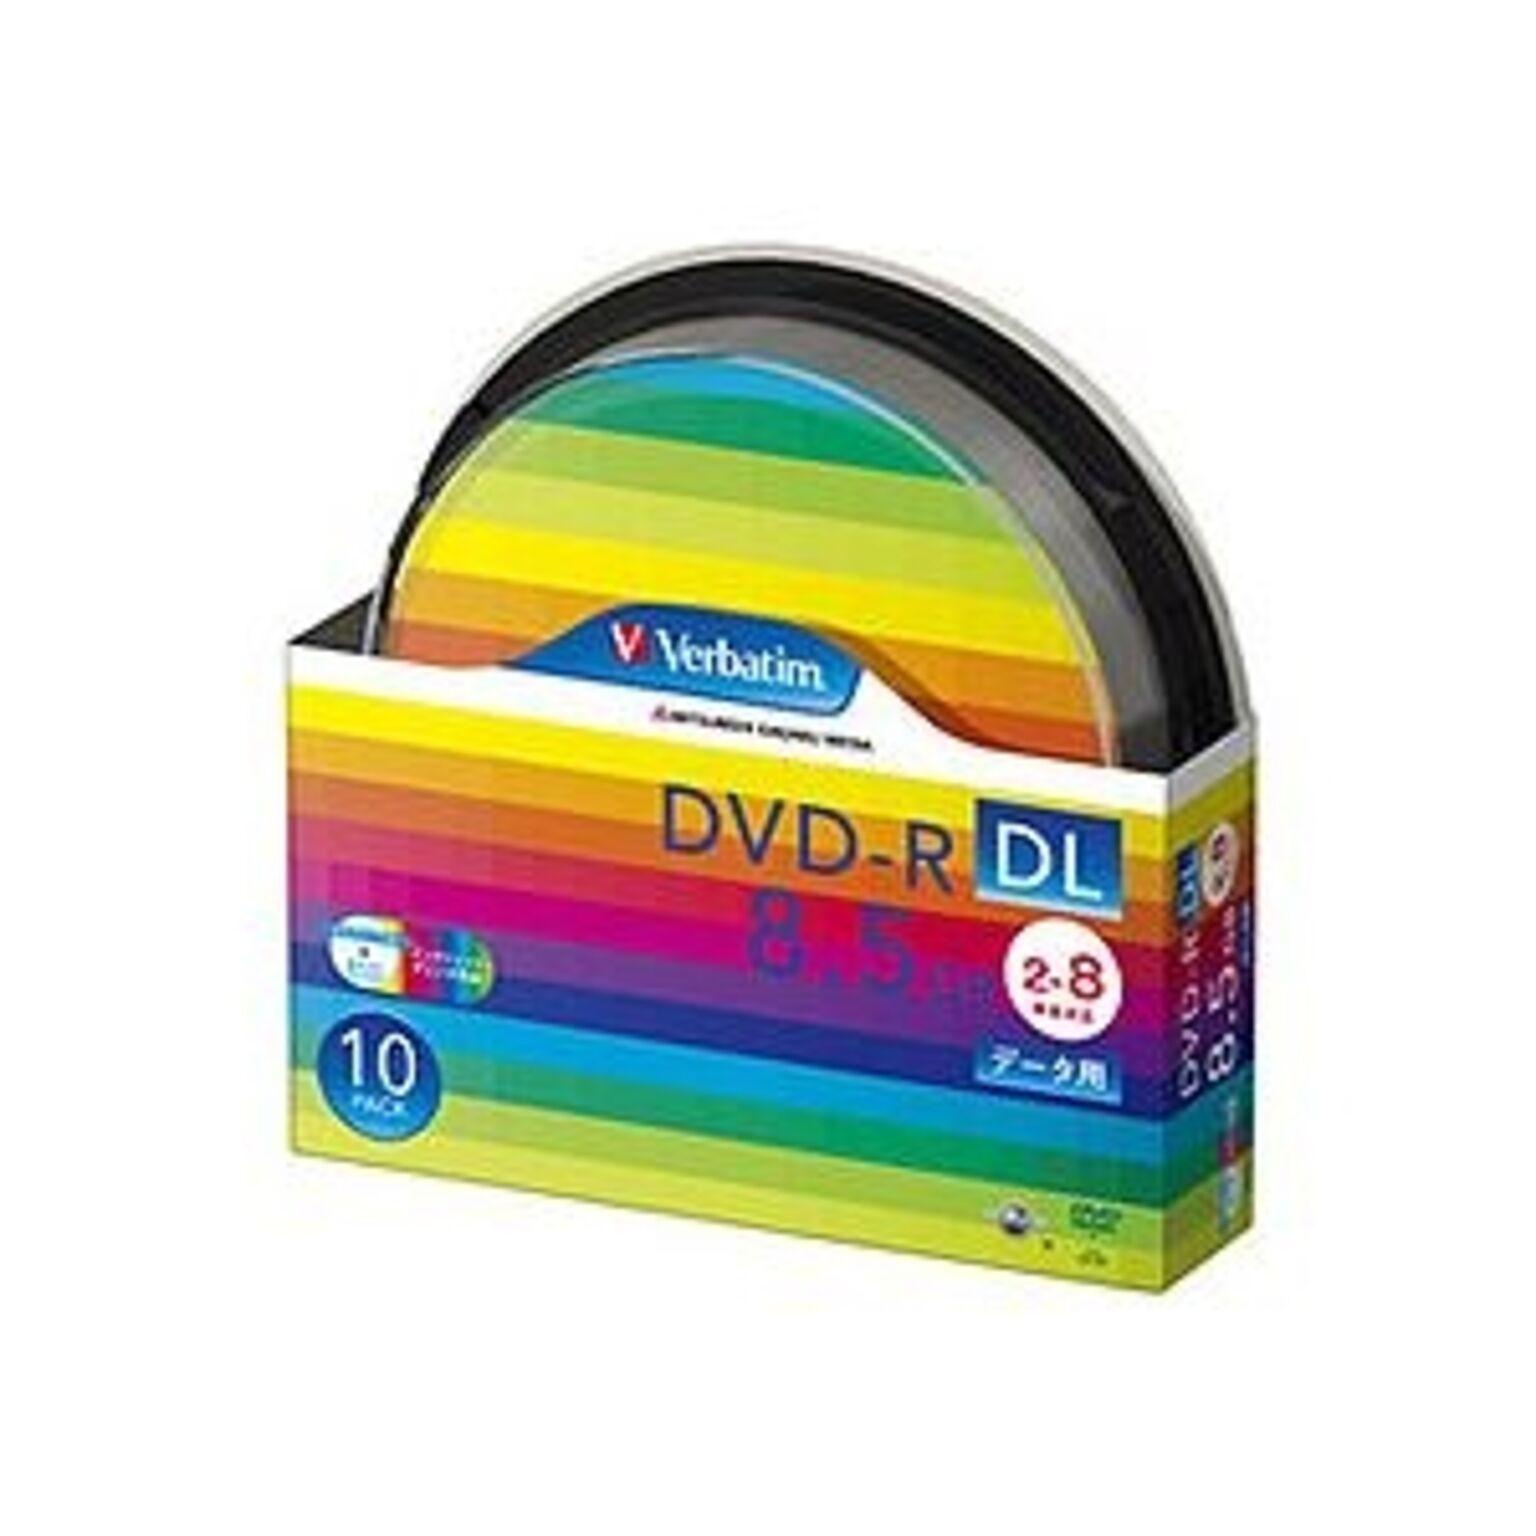 (まとめ) バーベイタム データ用DVD-R DL 8.5GB ワイドプリンターブル スピンドルケース DHR85HP10SV1 1パック(10枚) 【×5セット】